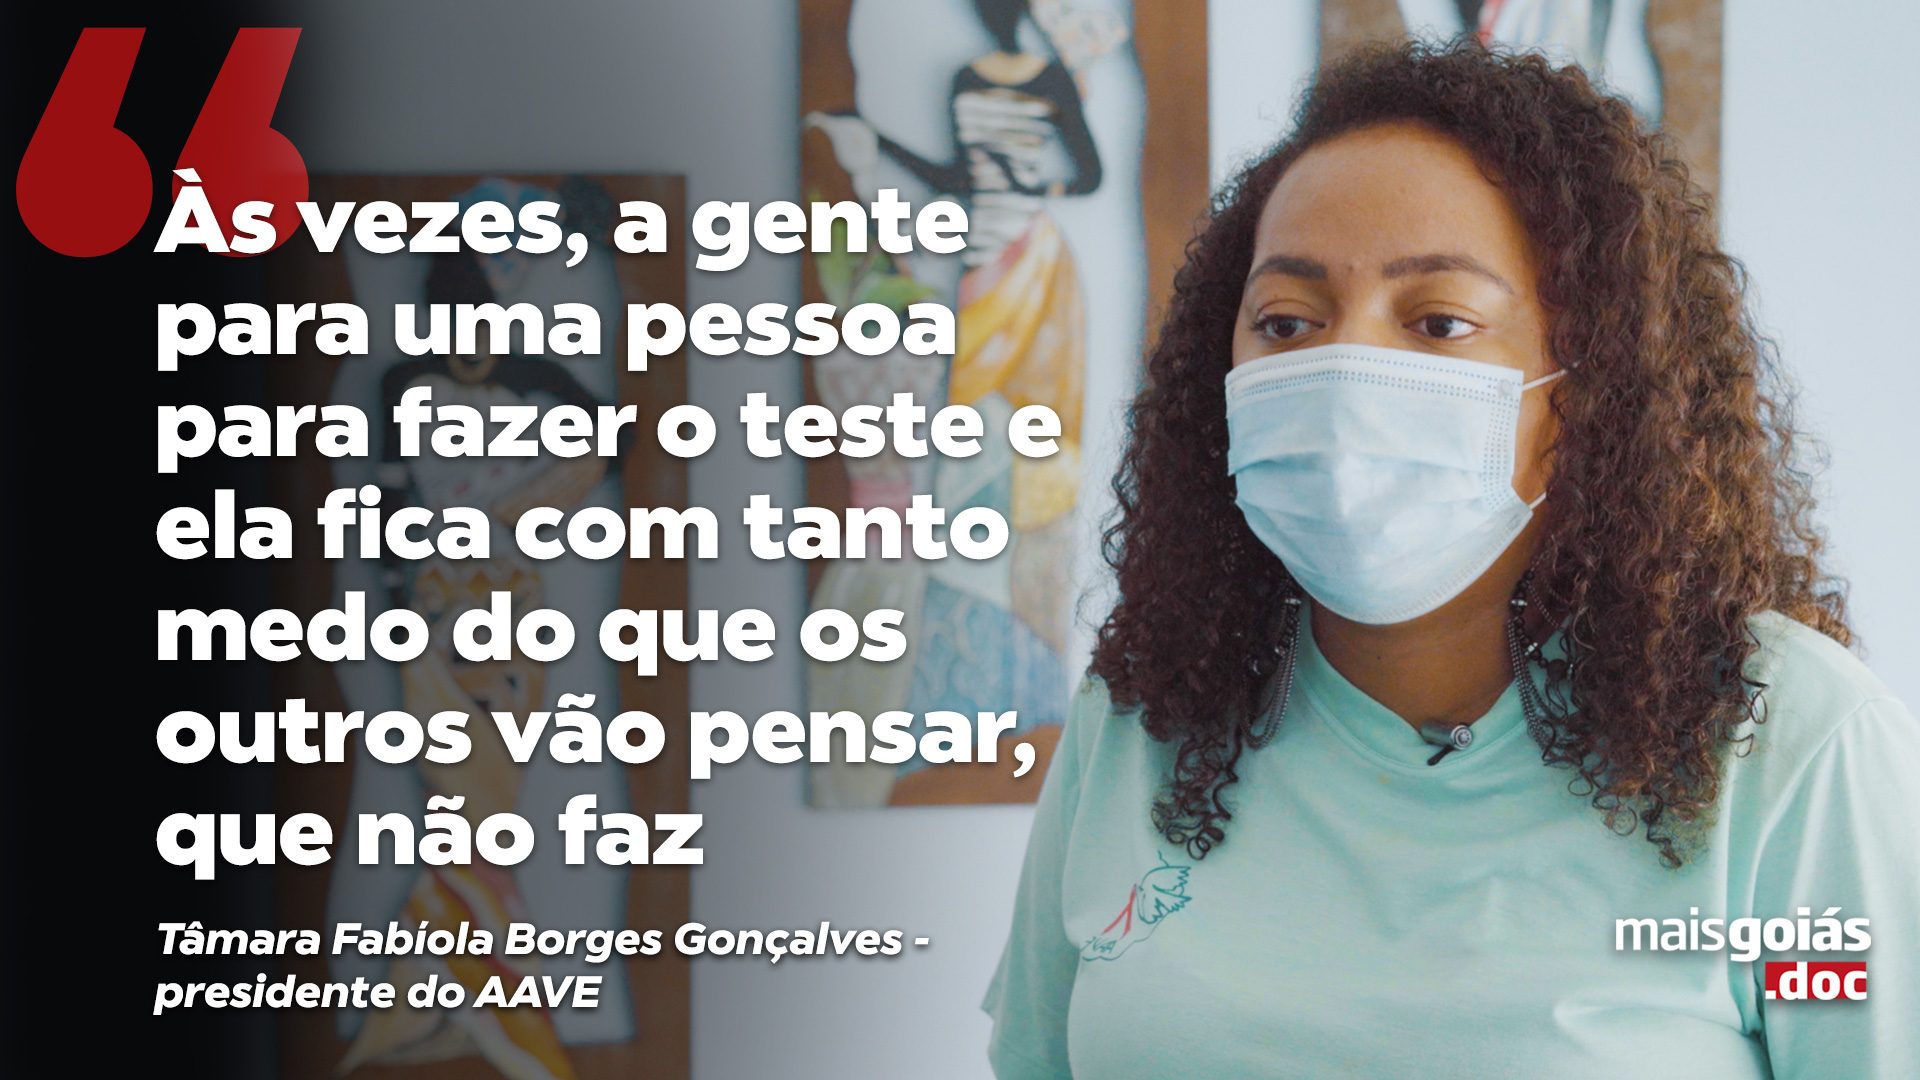 Em razão do Dezembro Vermelho - campanha de conscientização a respeito do HIV e da aids -, o Mais Goiás.doc desta semana retrata os desafios, preconceitos e a história da doença no Brasil. 